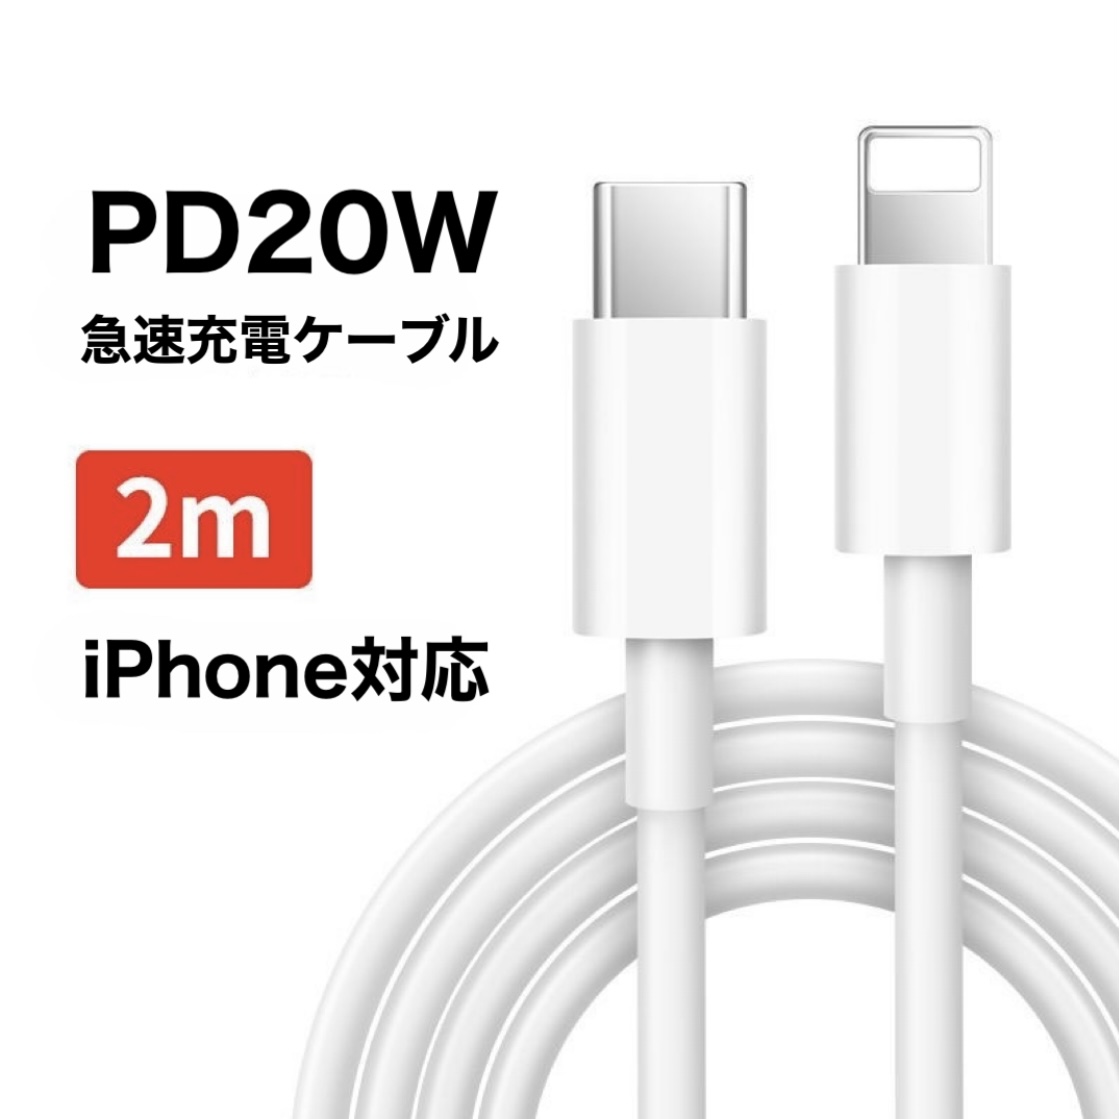 ライトニングケーブル iPhone 充電ケーブル タイプC 2m 1m 1.5m PD ケーブル 急速充電 20W iPhone iPad Type-C Lightning